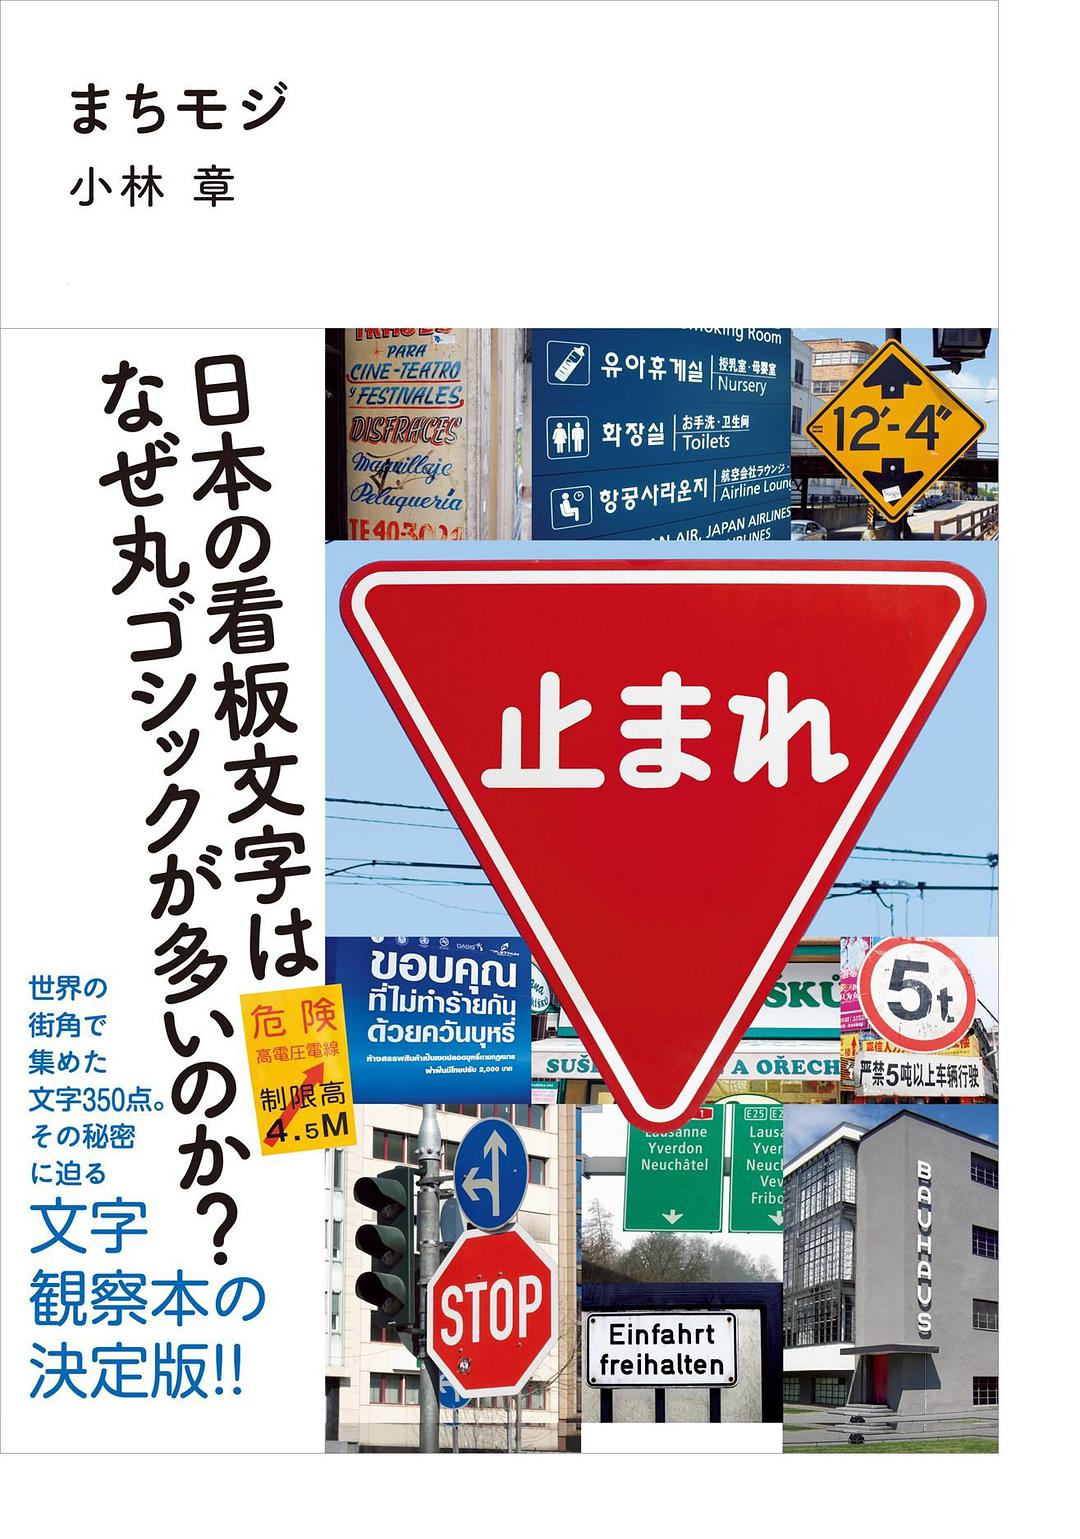 まちモジ：日本の看板文字はなぜ丸ゴシックが多いのか?